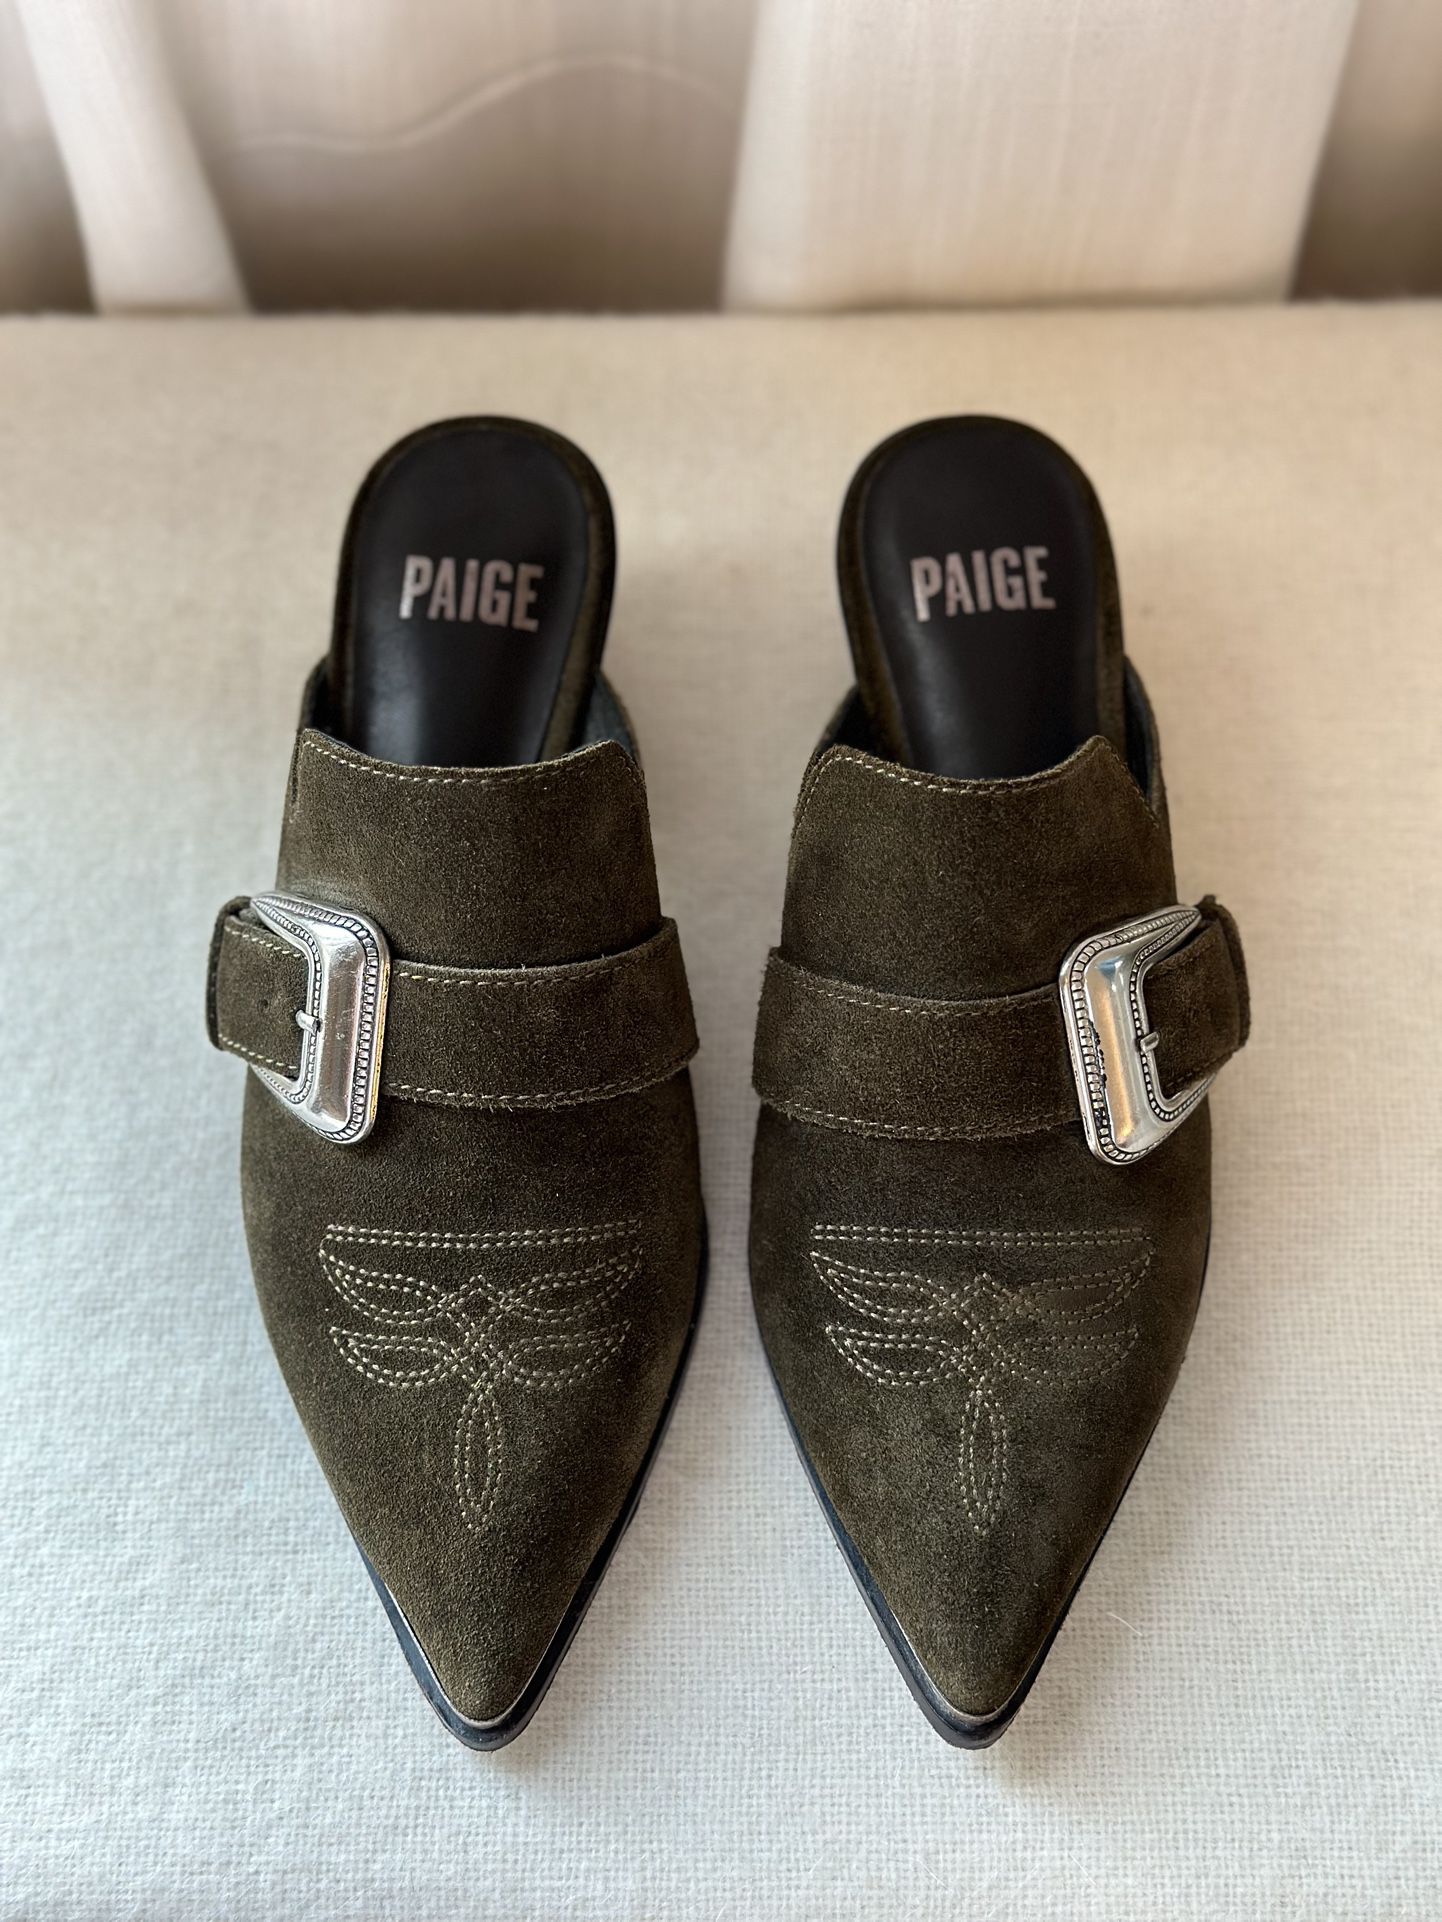 Pre-Owned Paige Kensington Western Suede Mules Heels